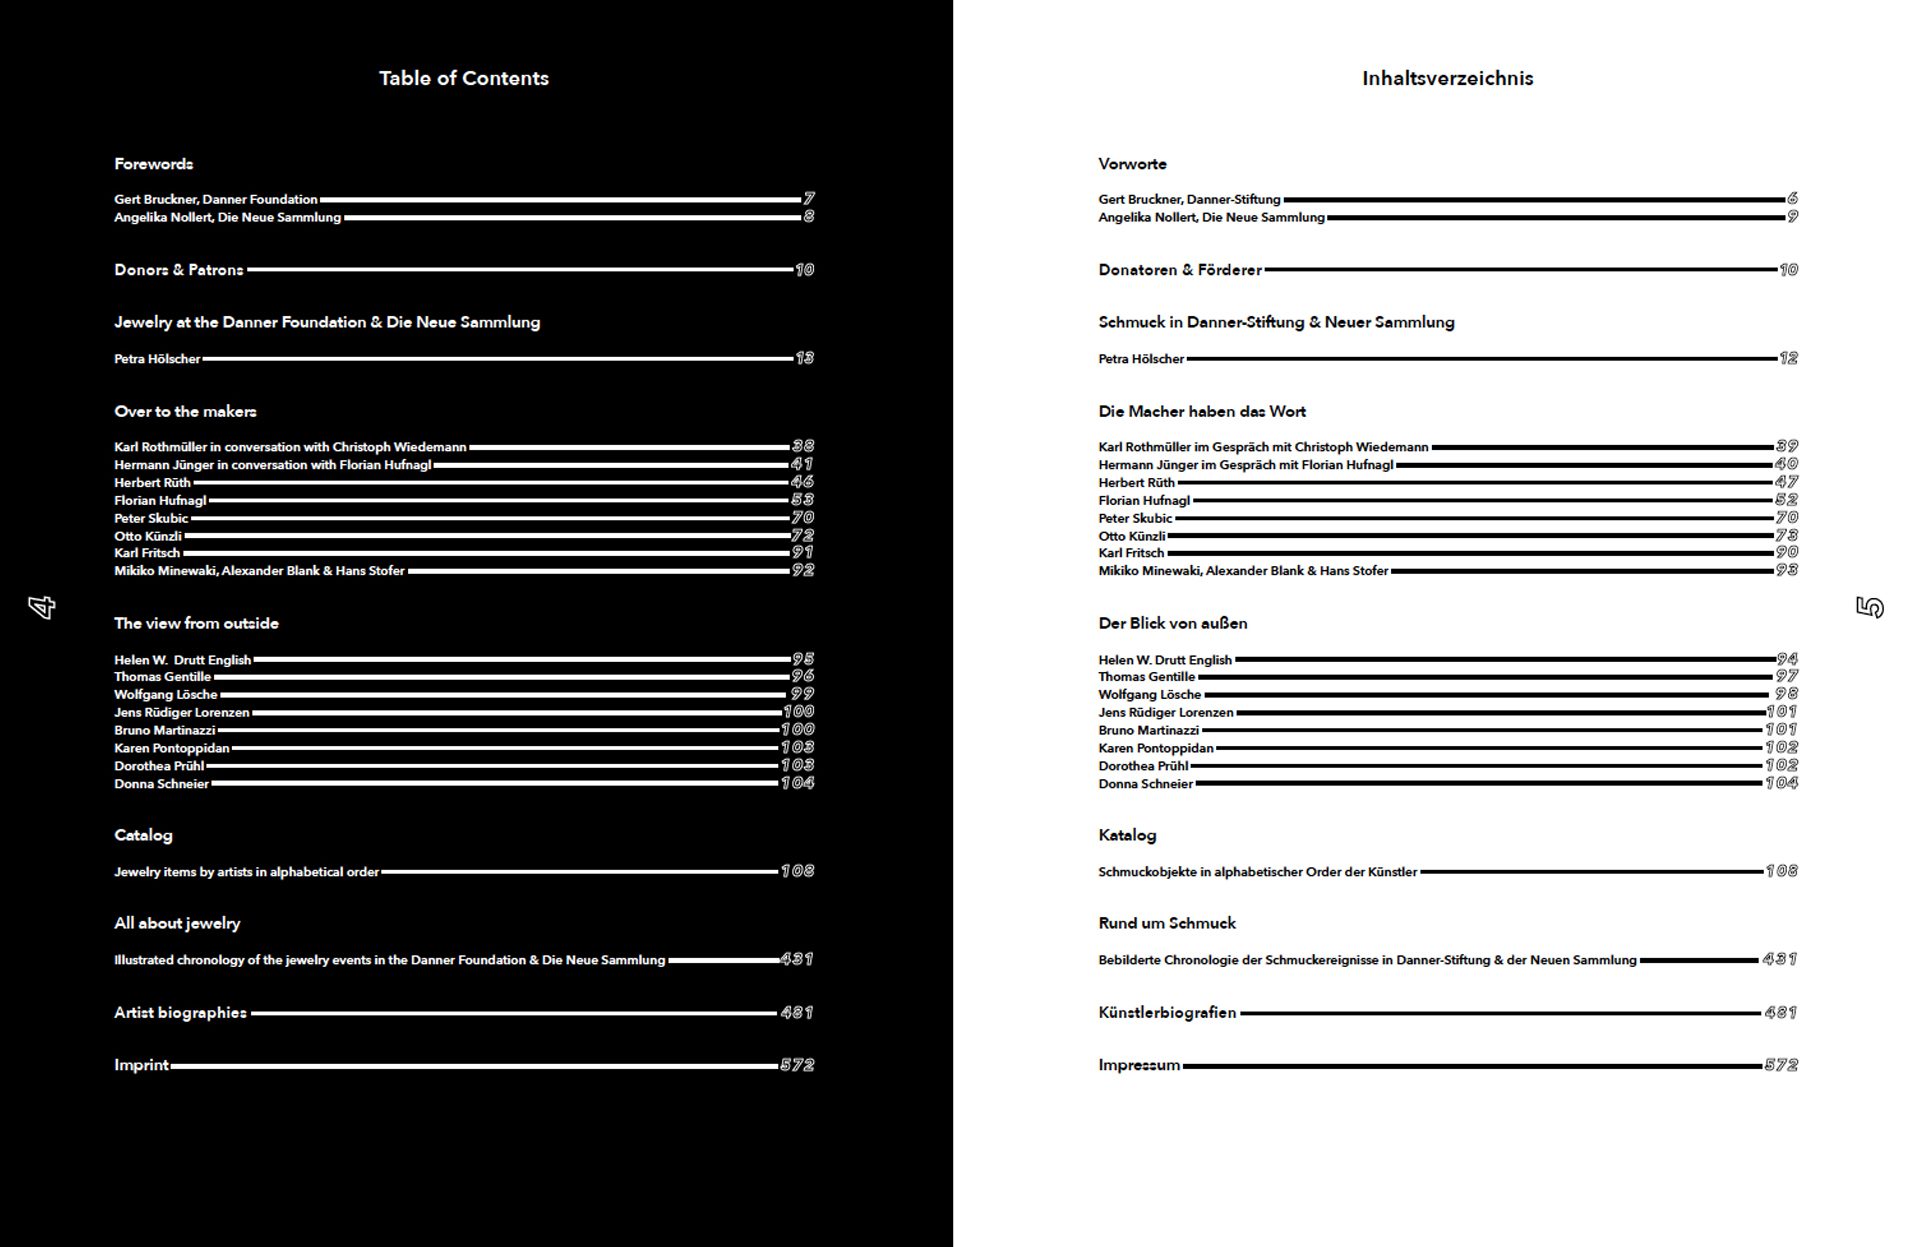 Links Table of Contents, weiß auf schwarz. Rechts Inhaltsverzeichnis, schwarz auf weiß.